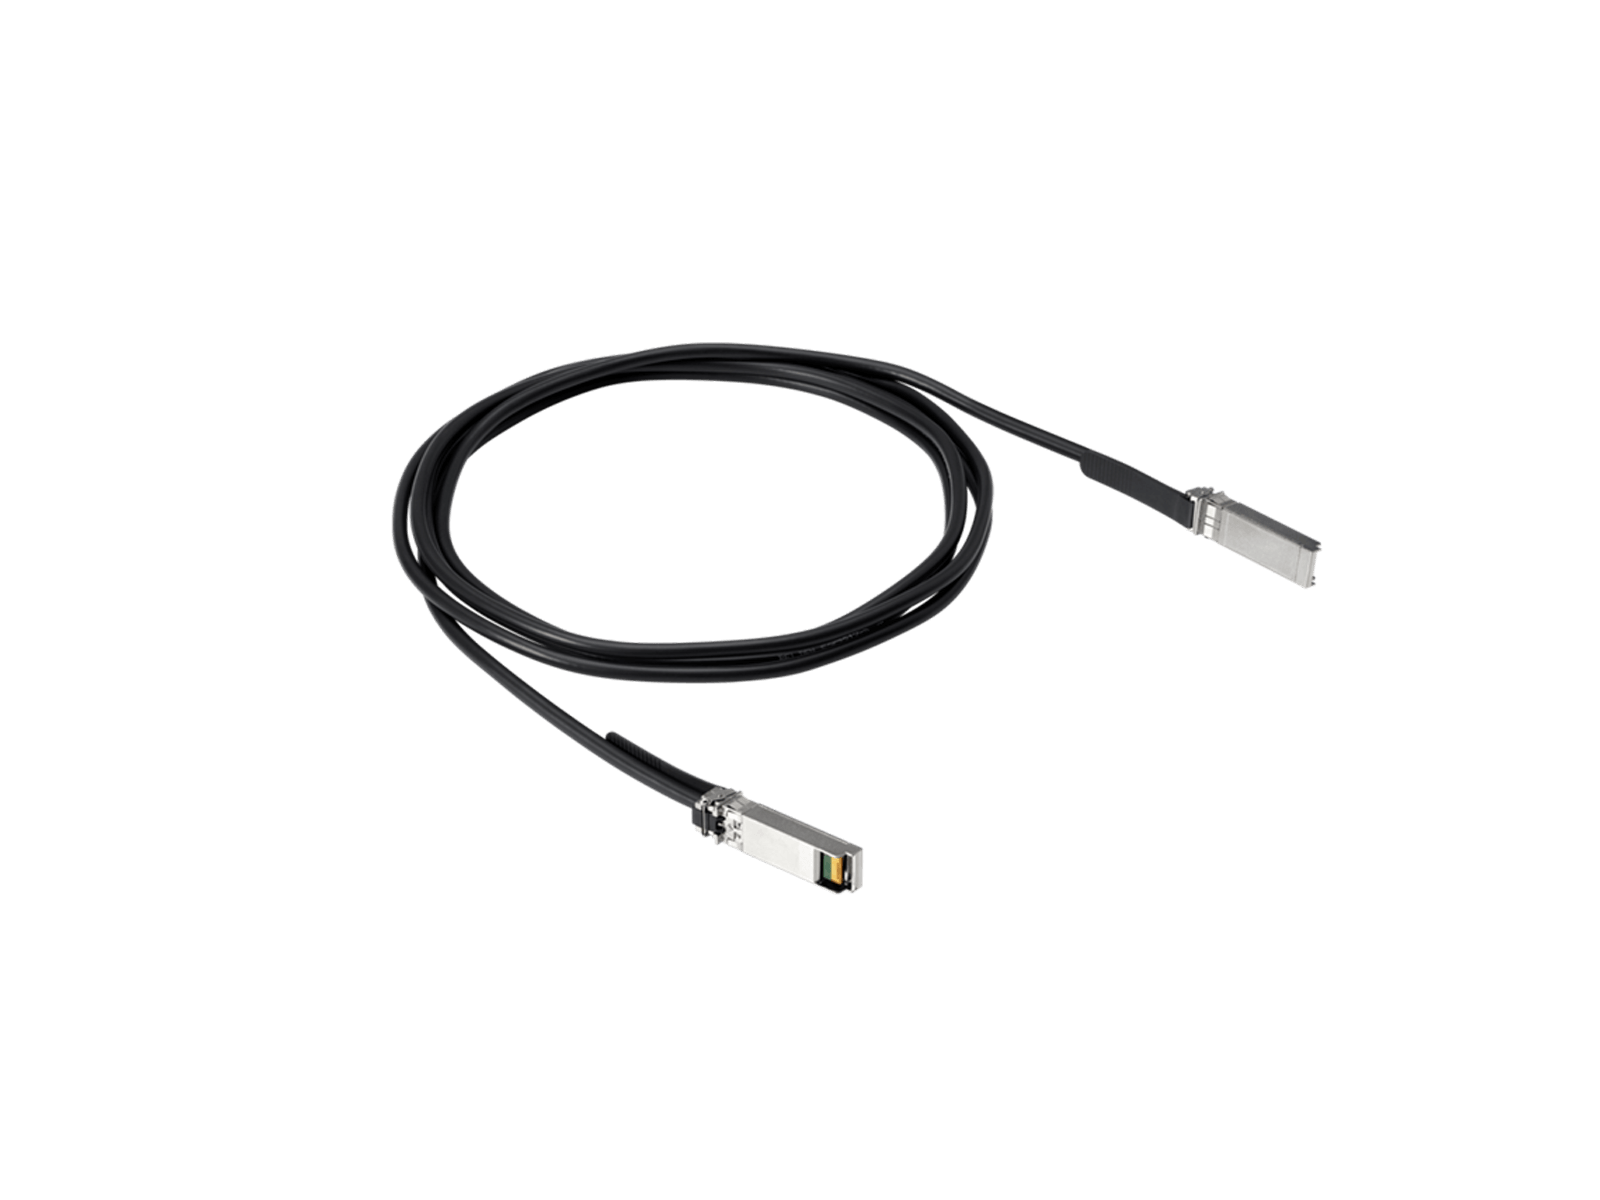 HPE Aruba Genuine 8121-1715 50GbE SFP56 to SFP56 0.65M DAC Direct Attach Cable 65cm 25.6in.